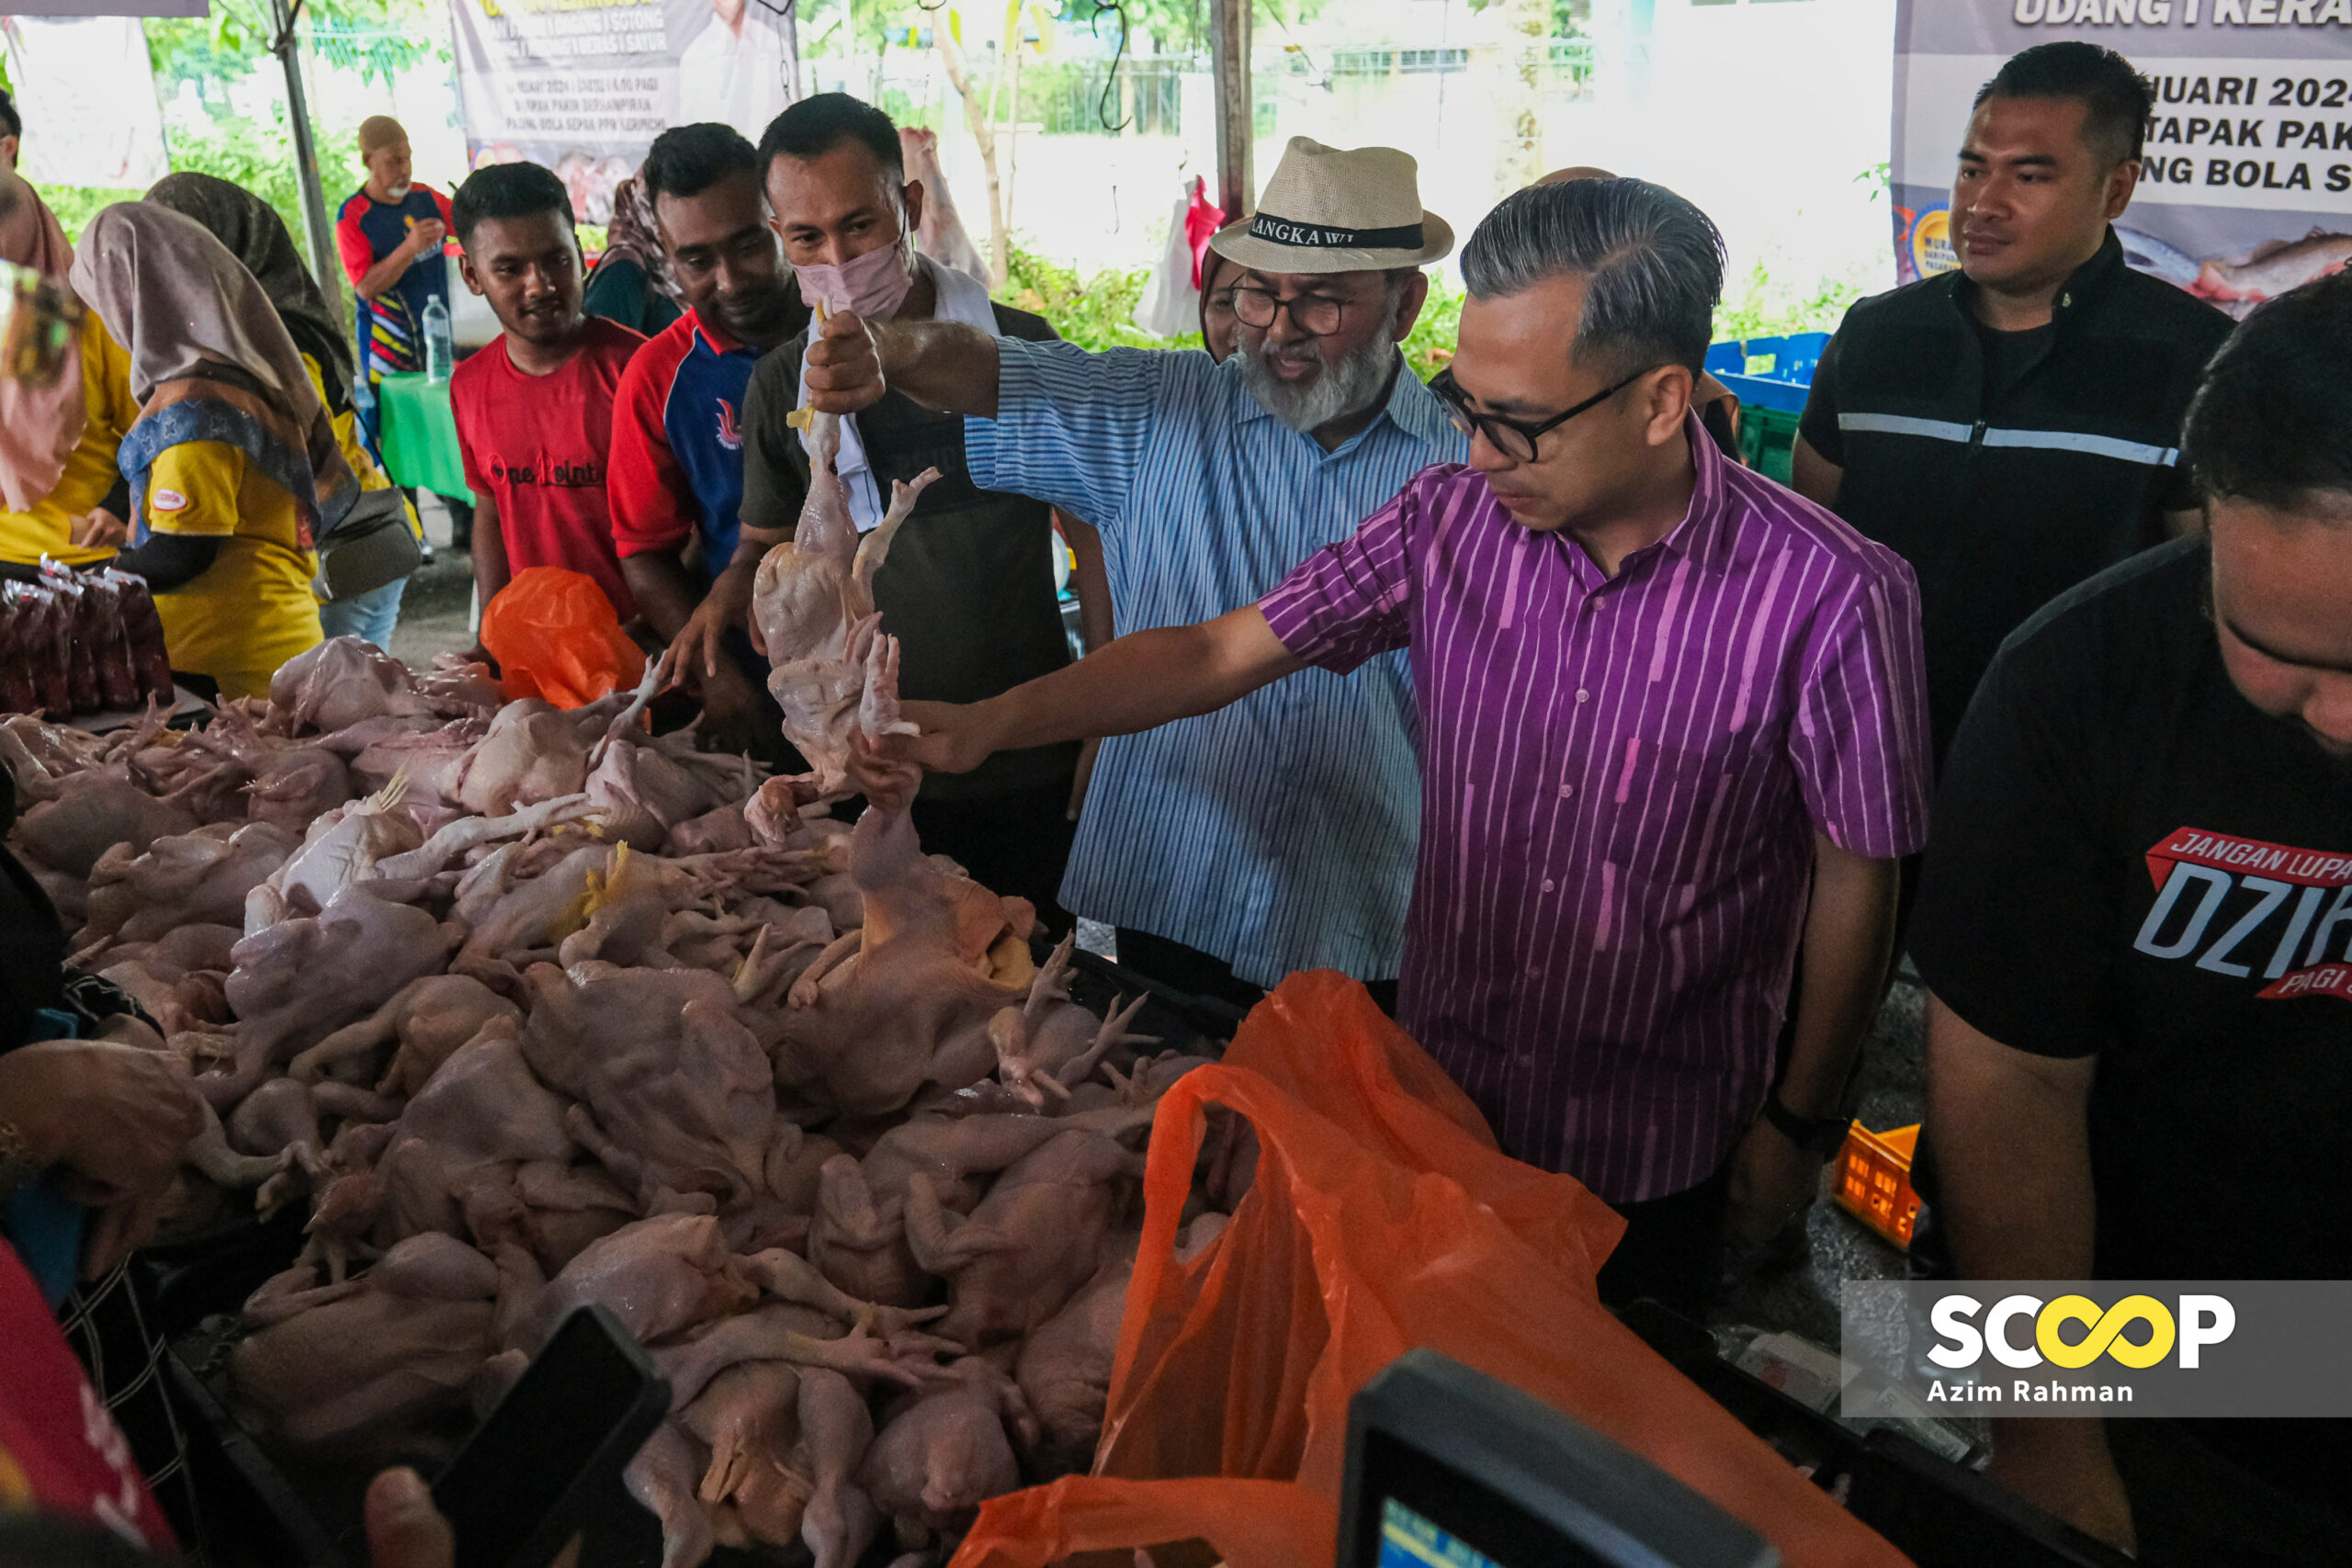 Jualan Termurah akan diperluas, ‘bukan bersaing dengan pasar raya, tapi bantu rakyat’: Fahmi